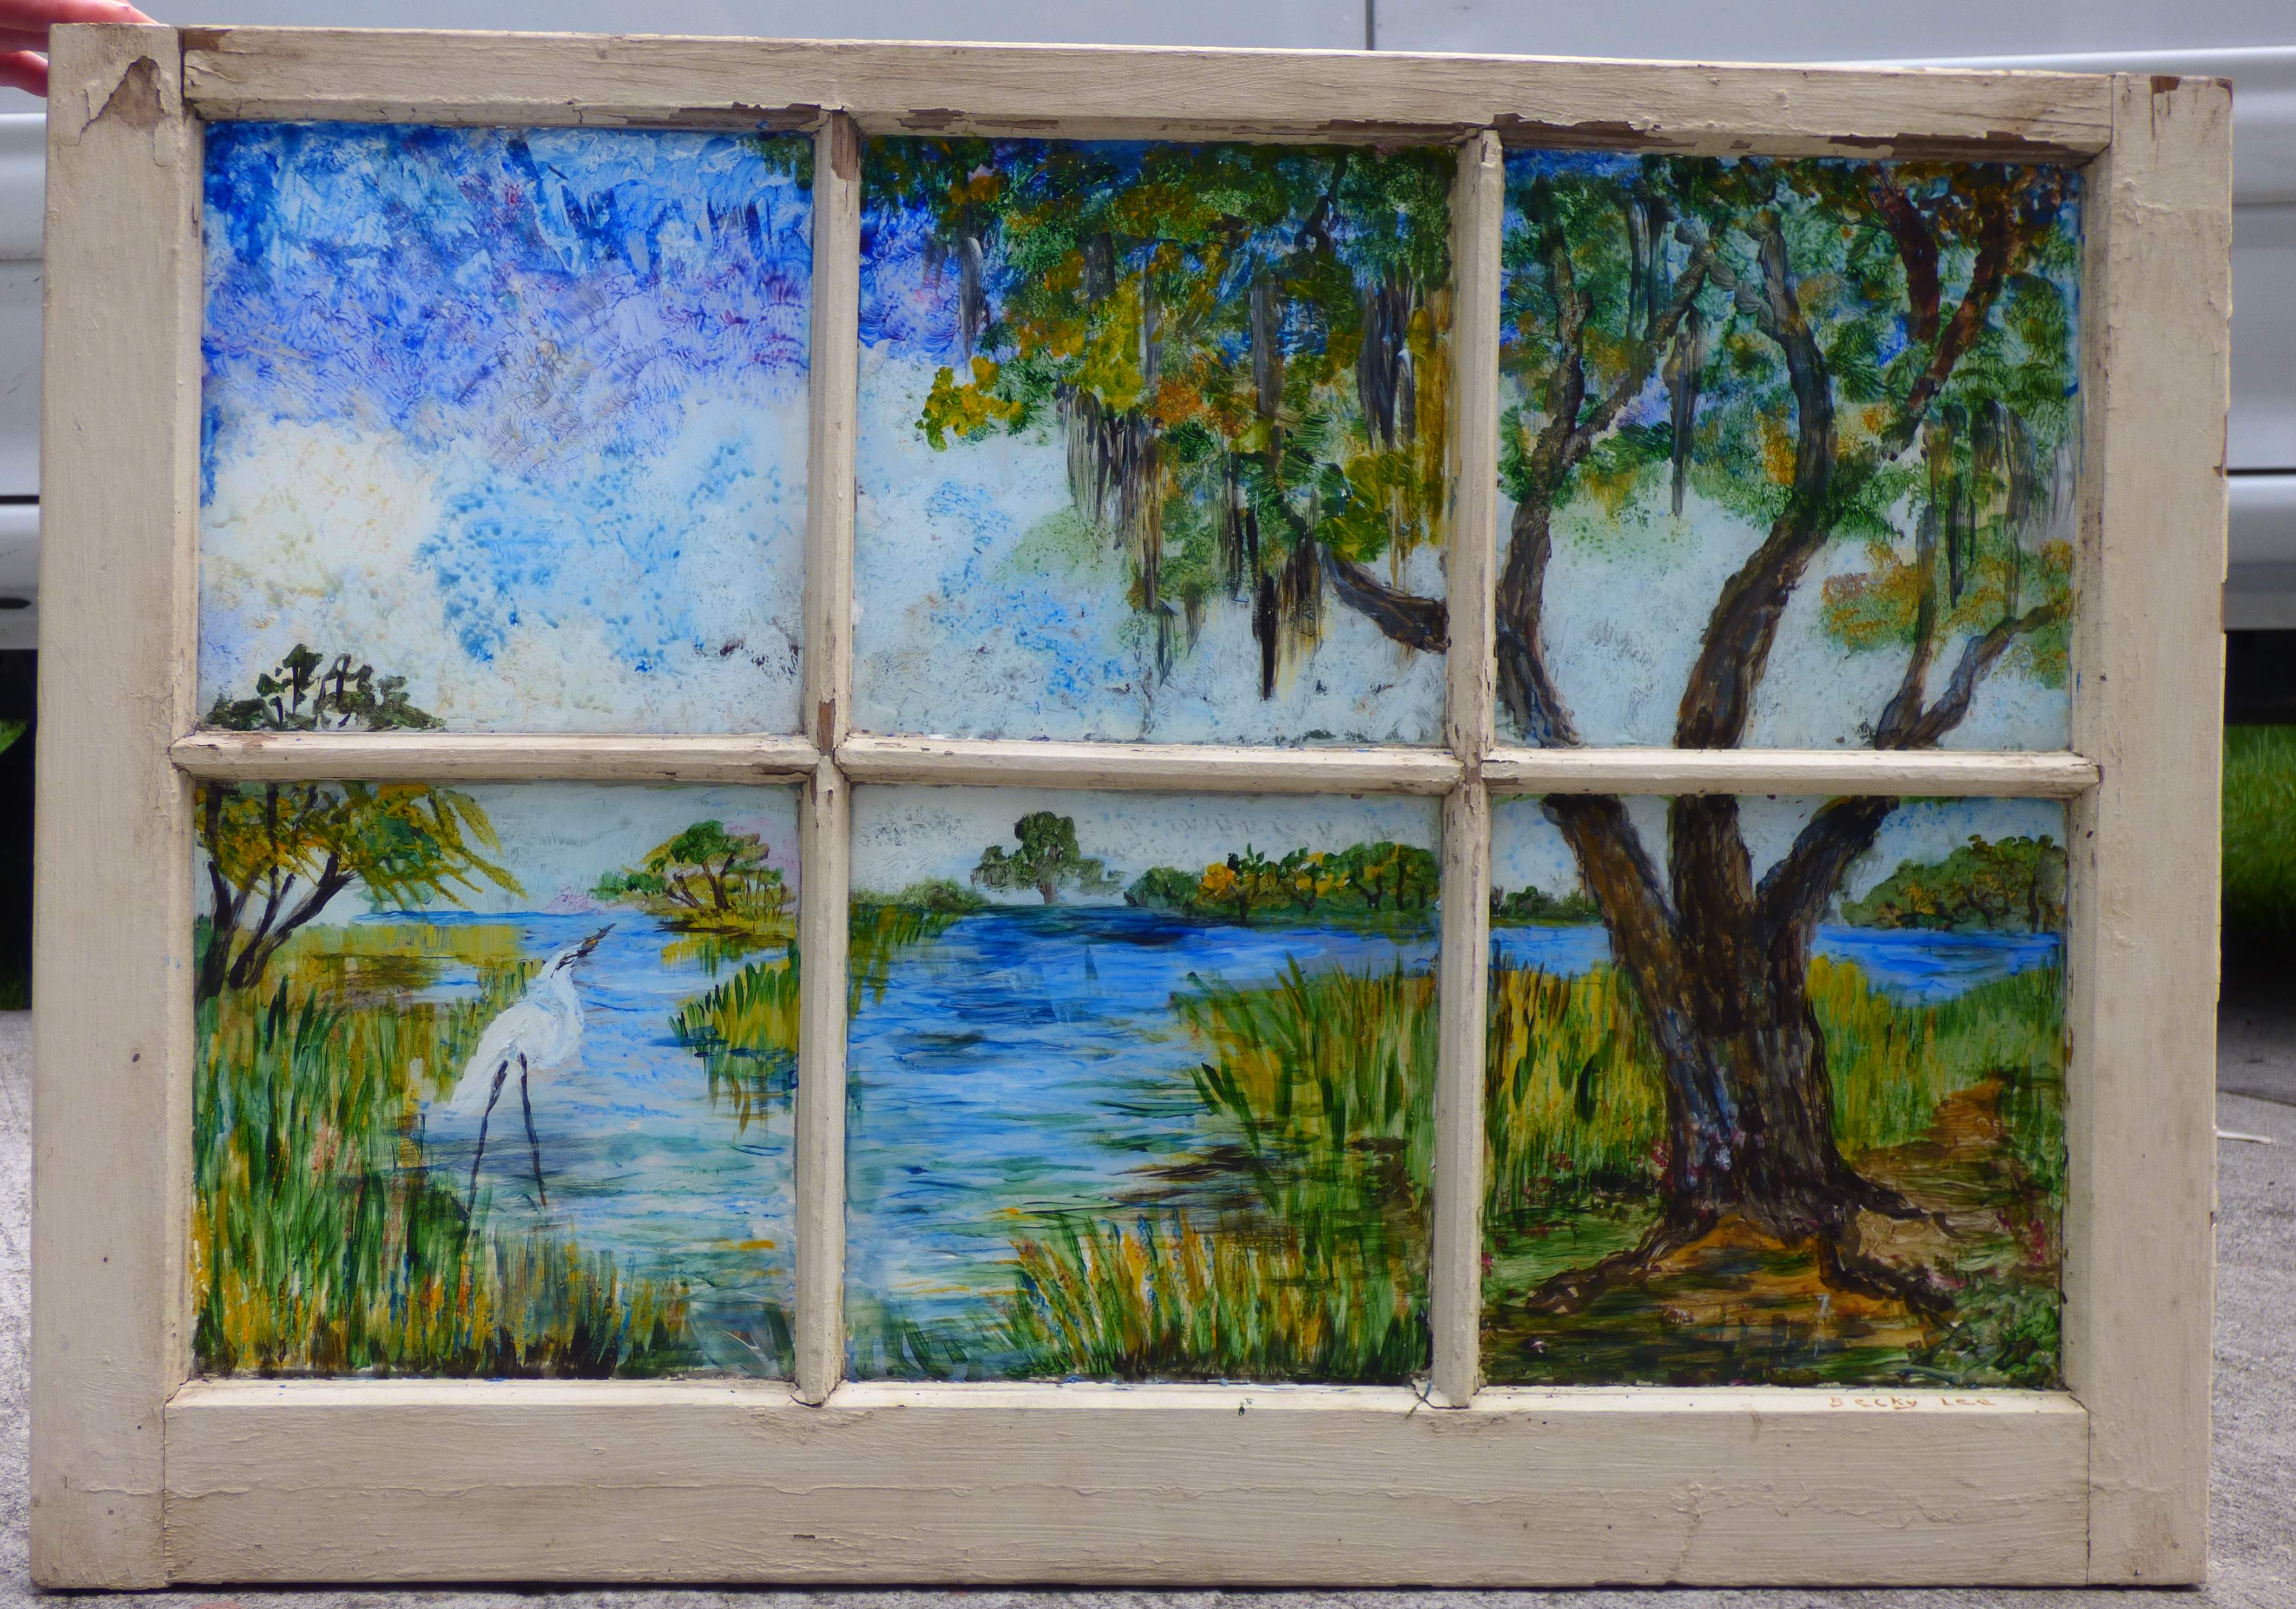 Marsh Scene in the Window